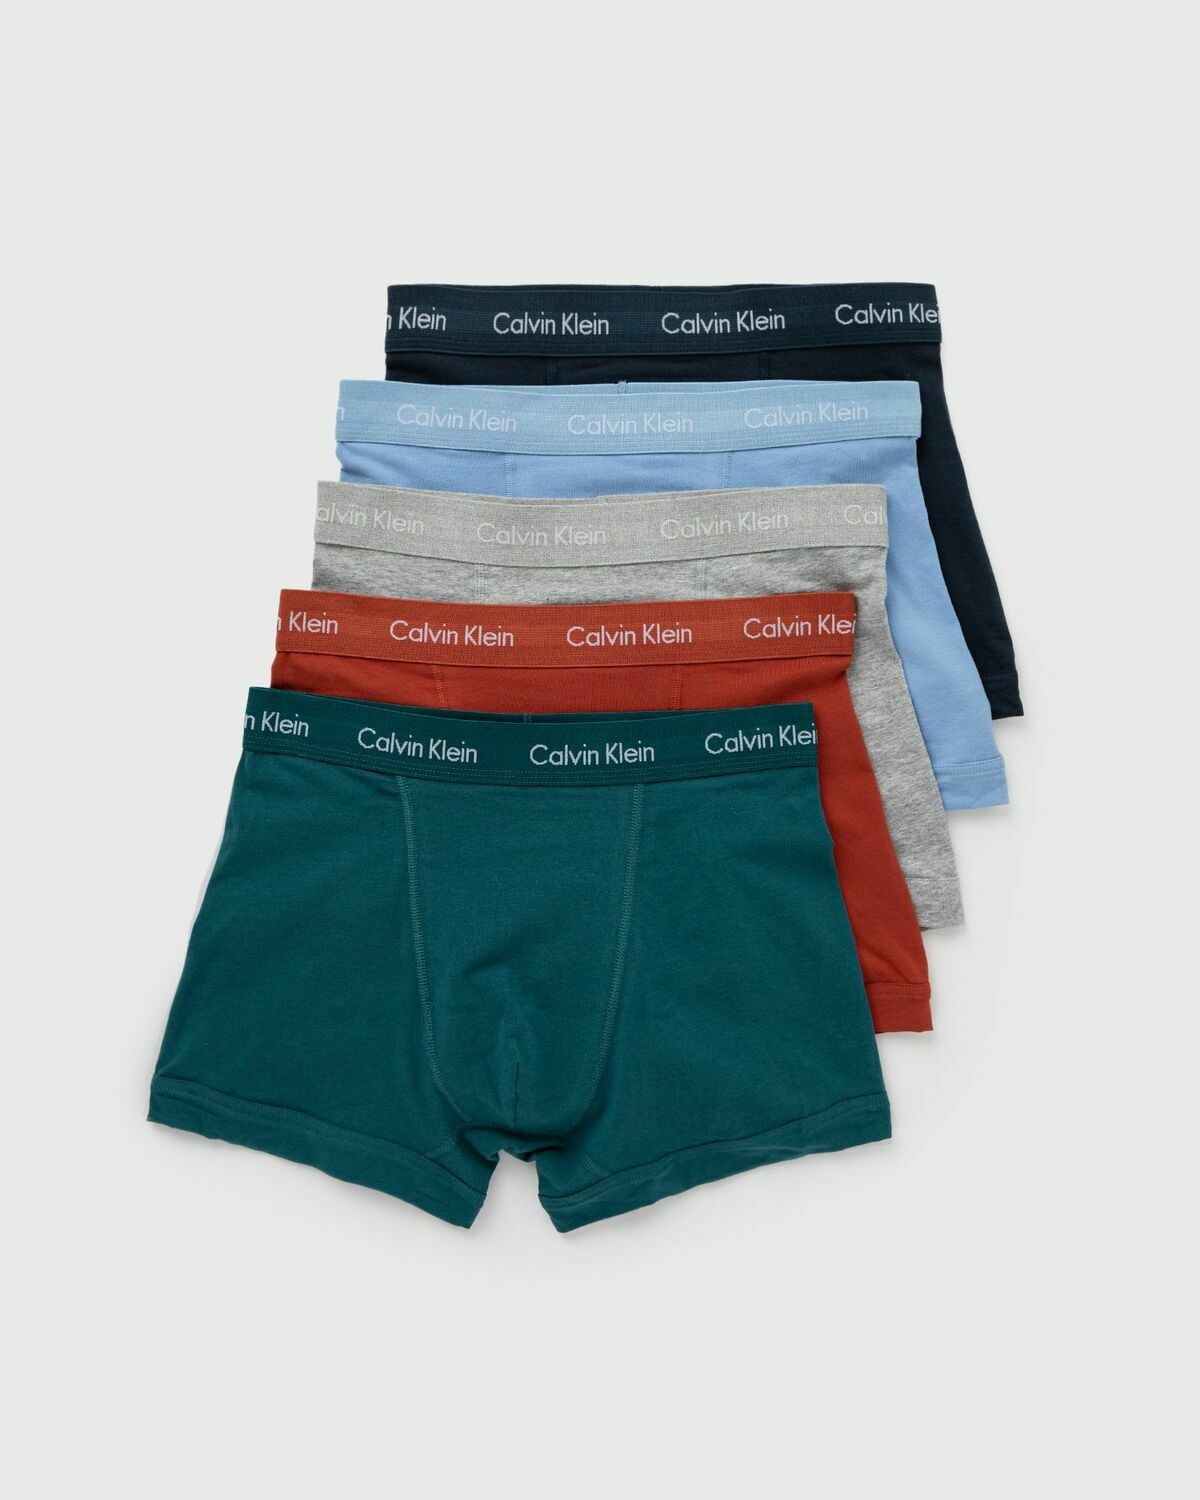 Calvin Klein Underwear Cotton Stretch Trunk 5 Pack Multi - Mens - Boxers &  Briefs Calvin Klein Underwear